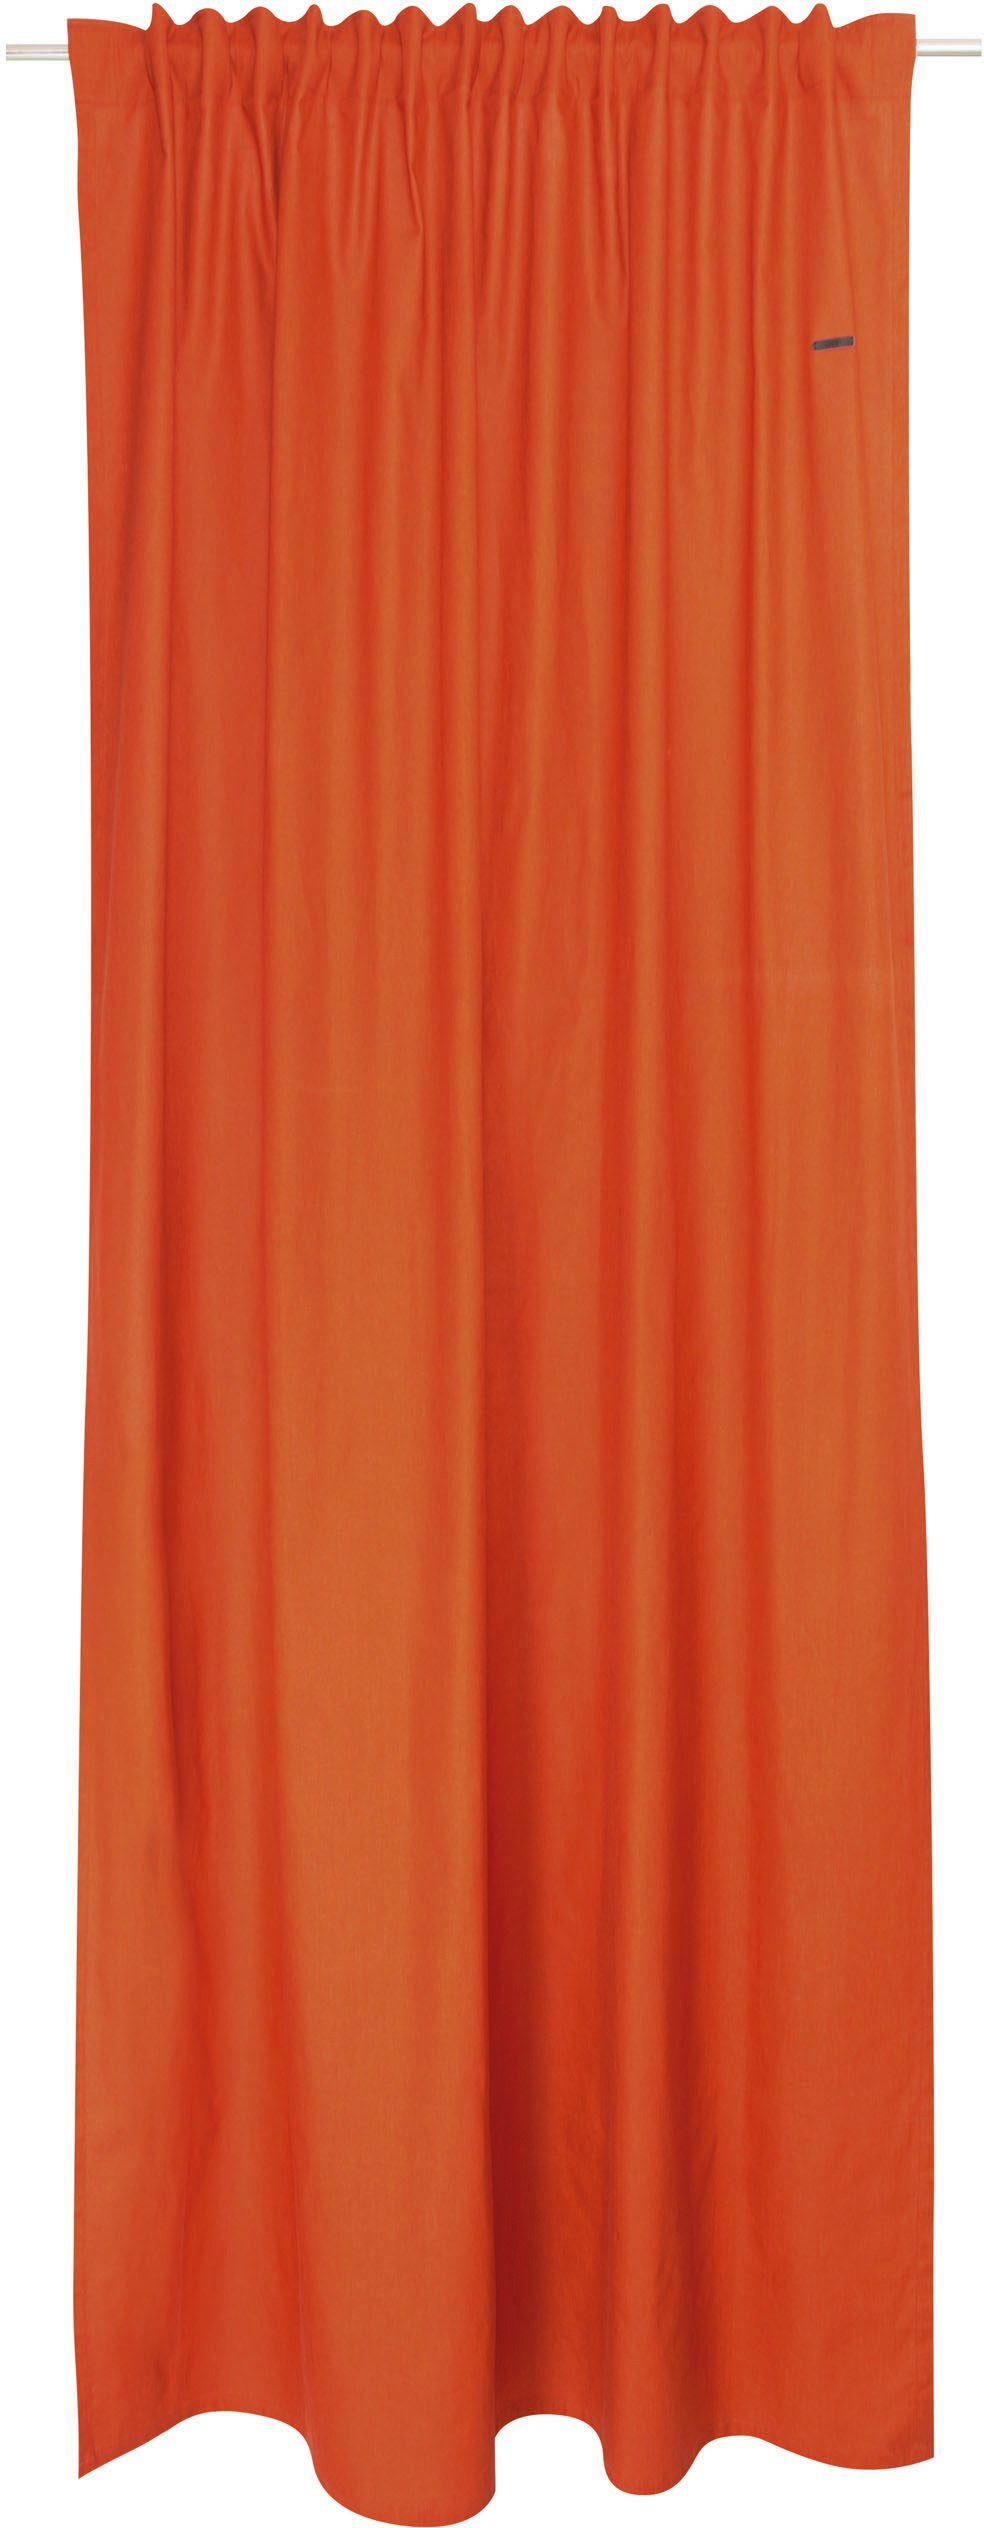 (1 verdeckte nachhaltiger Schlaufen Neo, aus St), Esprit, bronzefarben/zimt/orange Baumwolle, blickdicht, blickdicht Vorhang